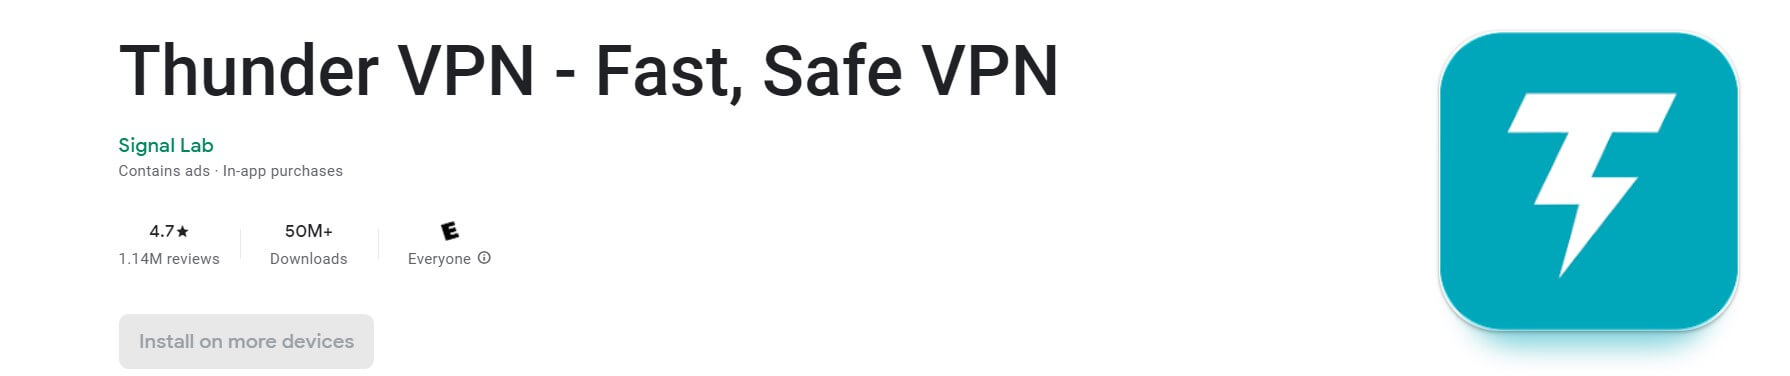 برنامج Thunder VPN - Fast, Safe VPN